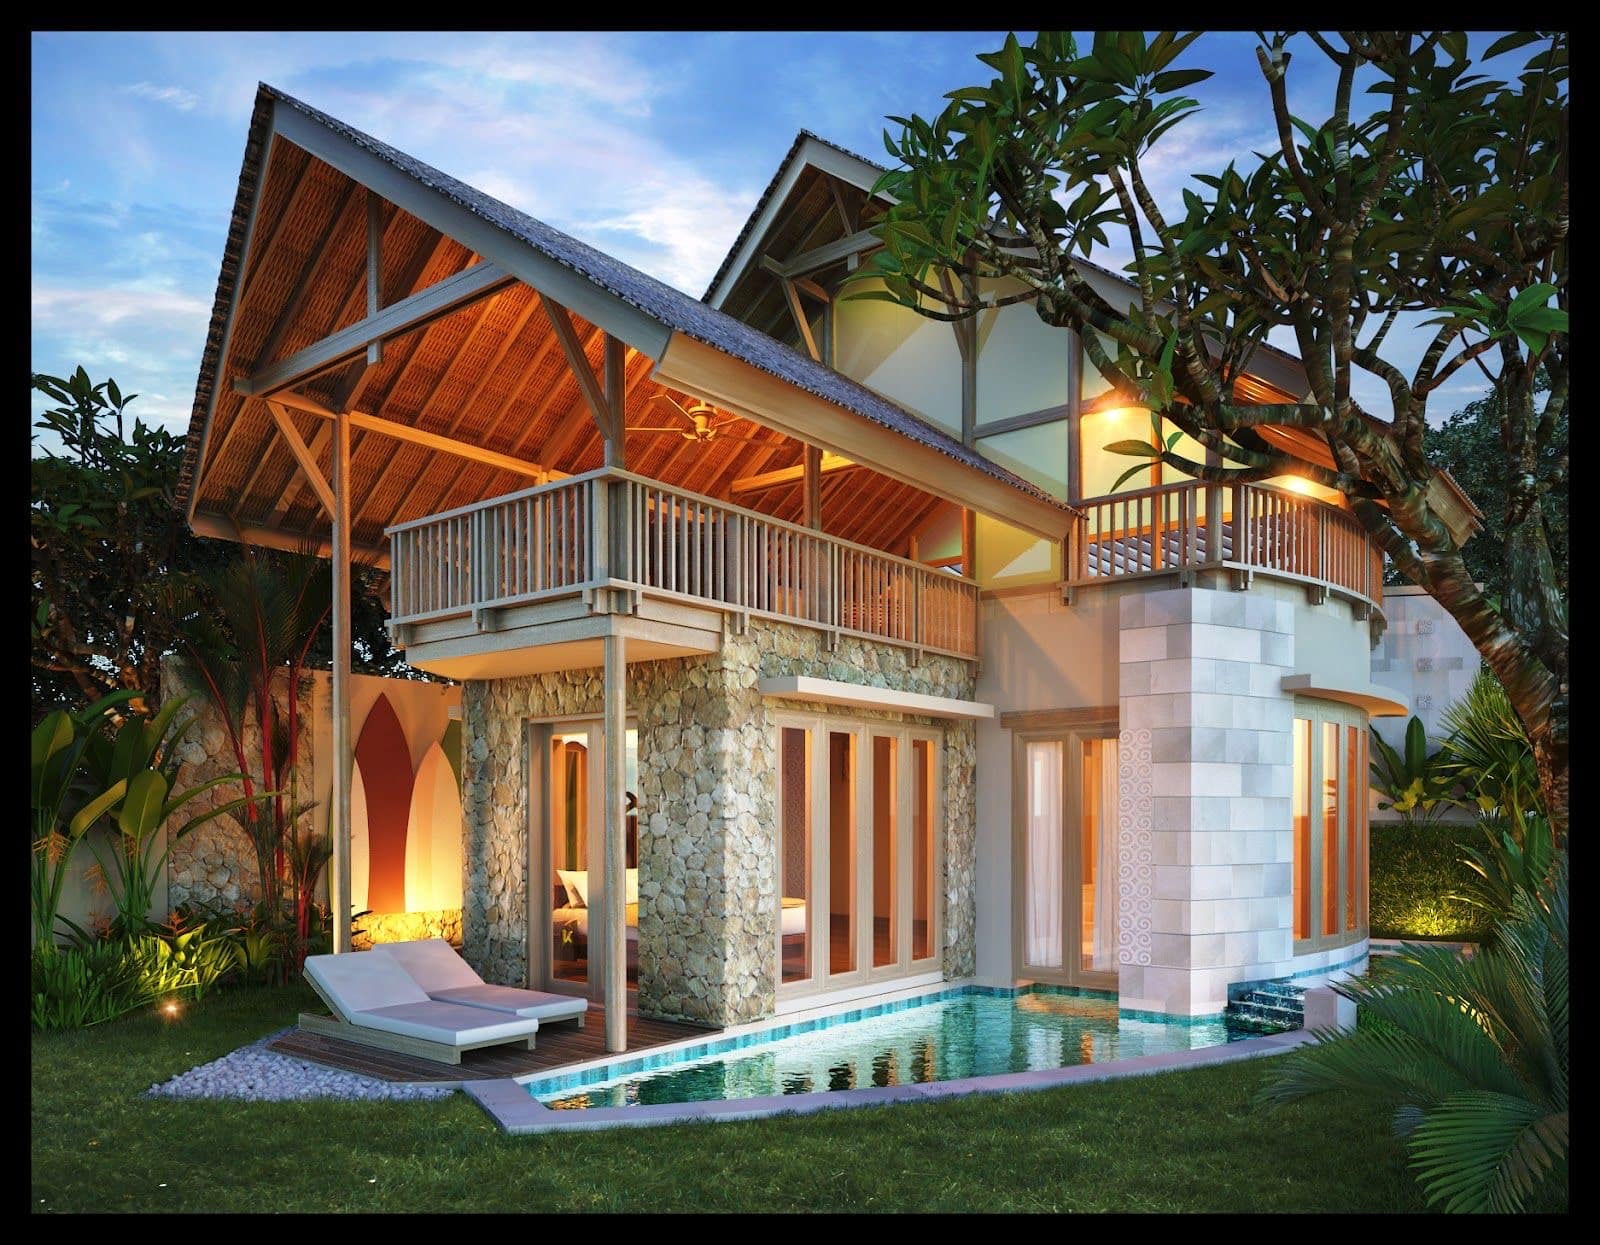 Rumah Bali dengan Batu Alam dan Kolam Renang - Thegorbalsla